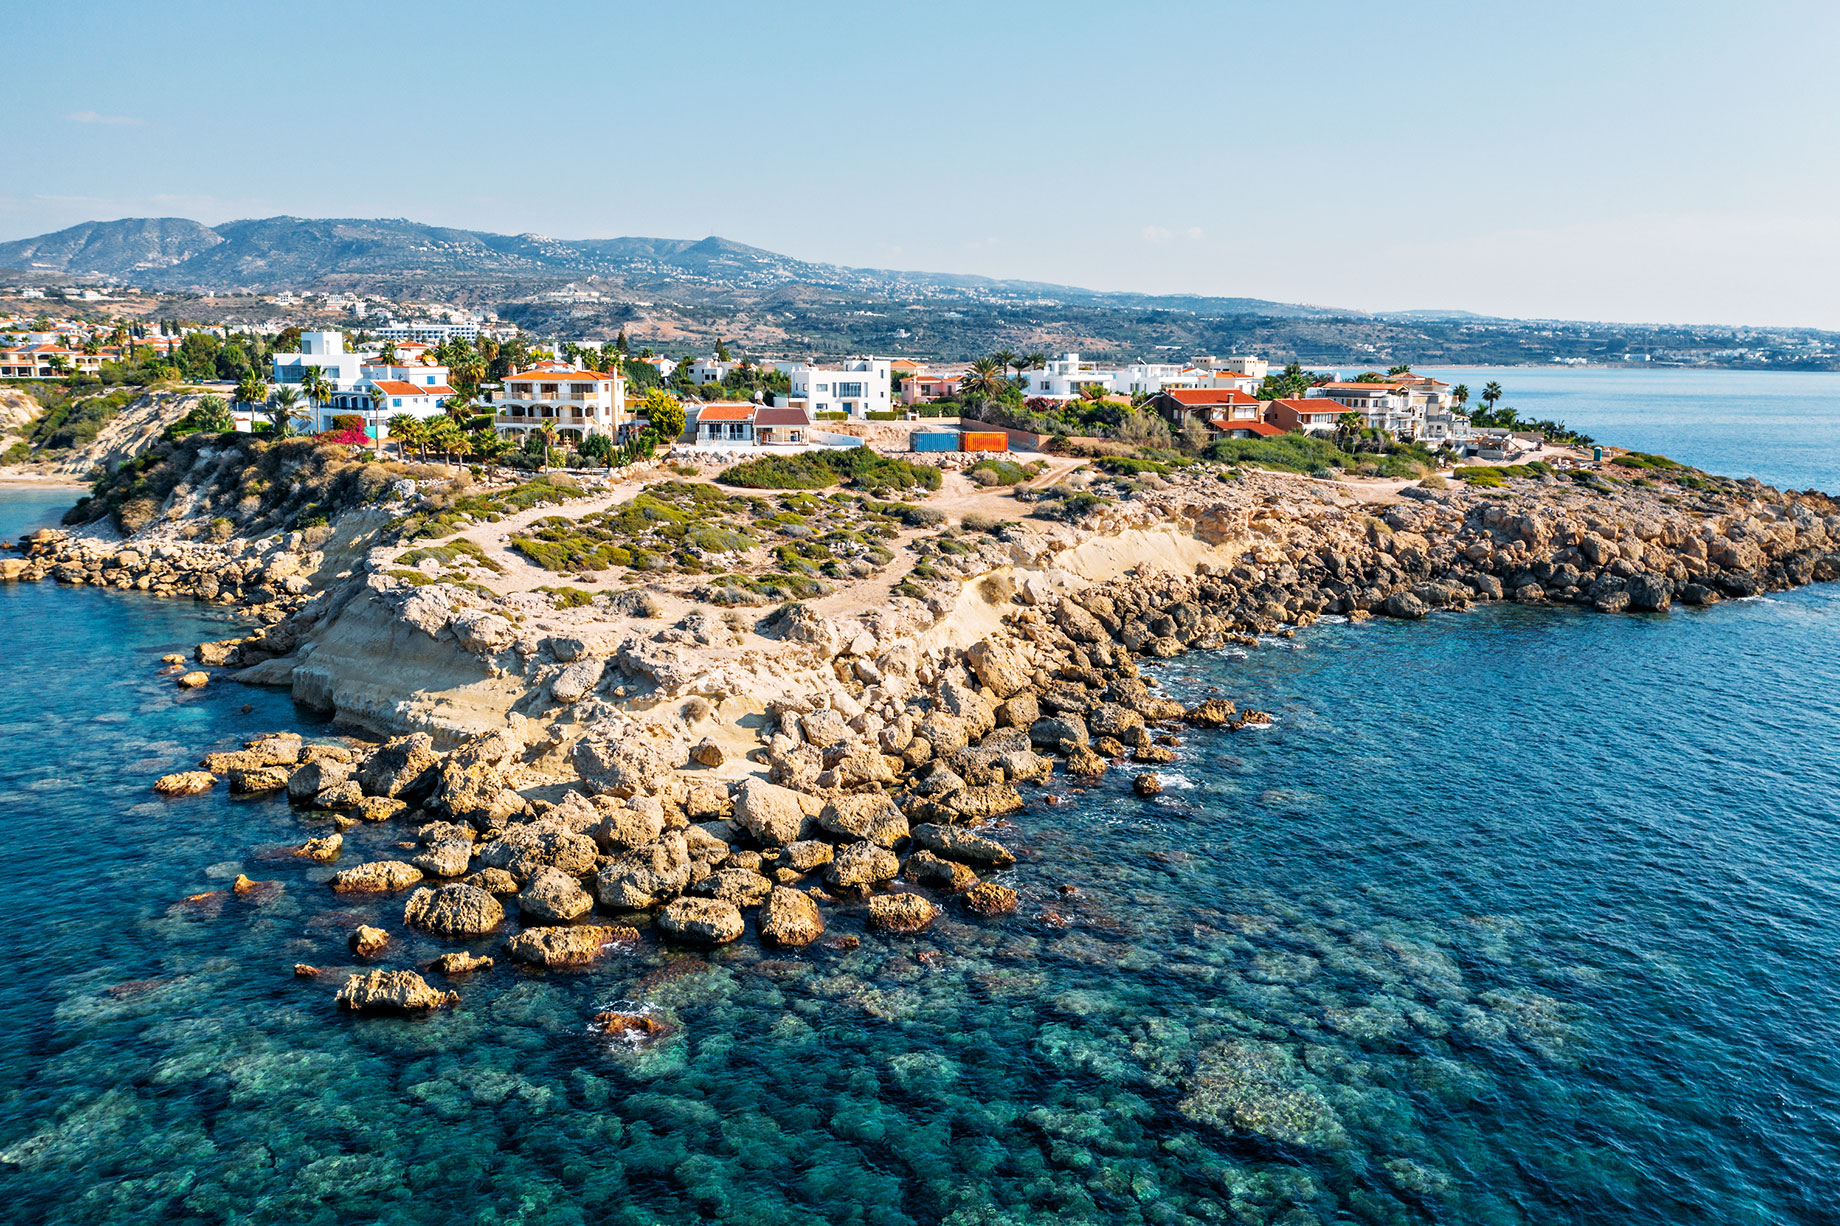 Coral Bay Beach Villas - Paphos, Cyprus